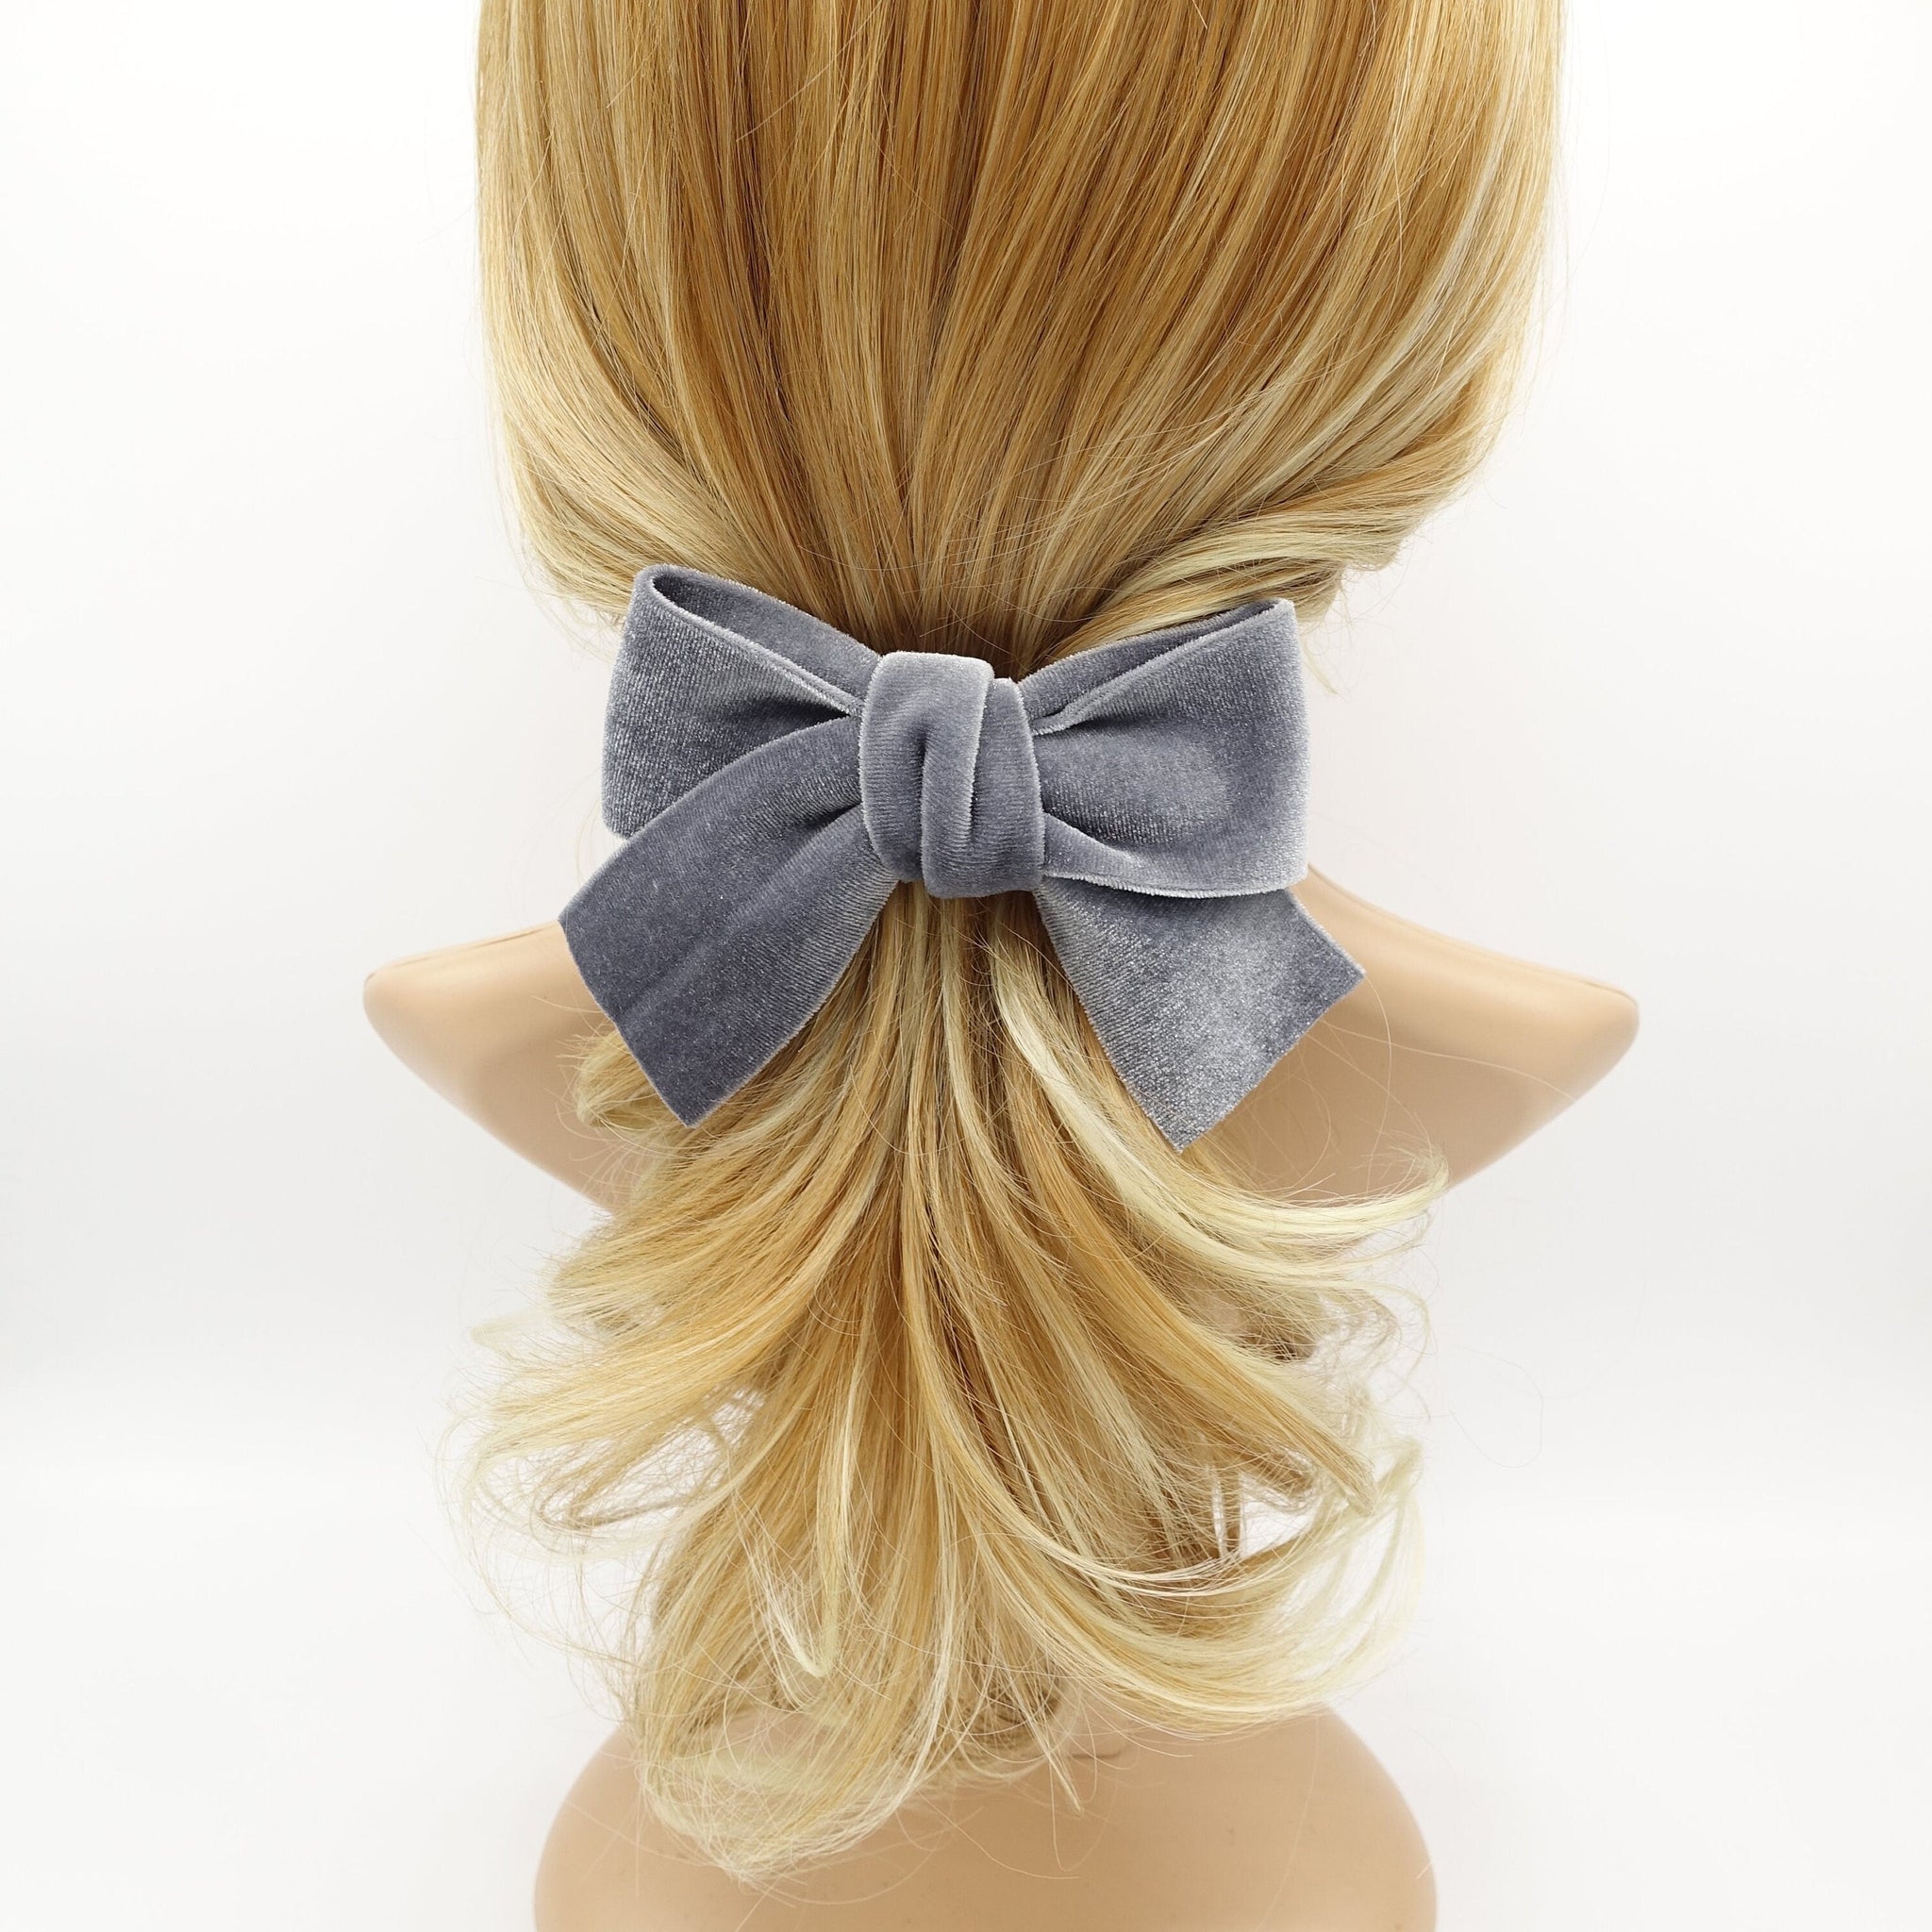 veryshine.com Barrette (Bow) Gray medium velvet cross bow french barrette basic Fall Winter hair accessory